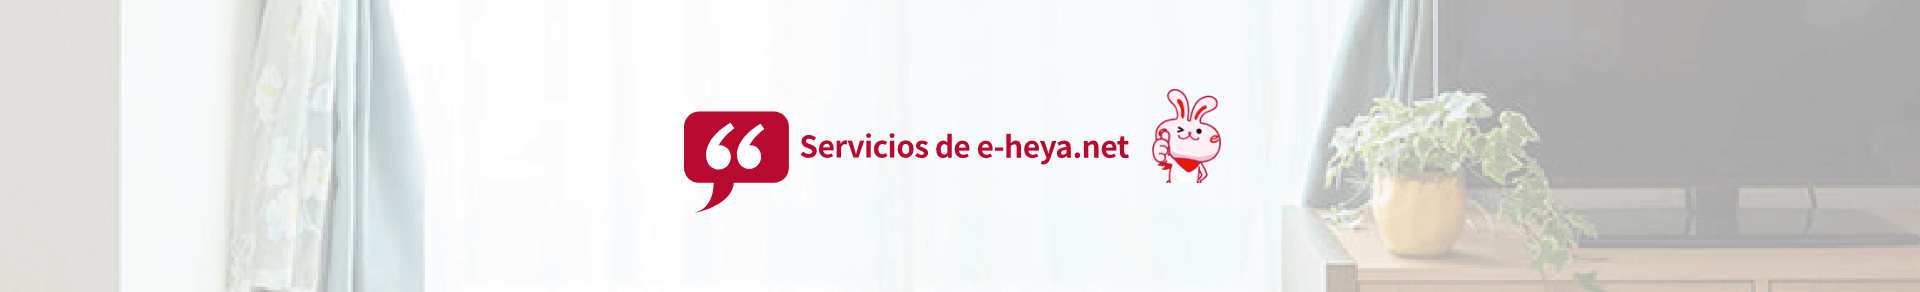 Servicios de e-heya.net